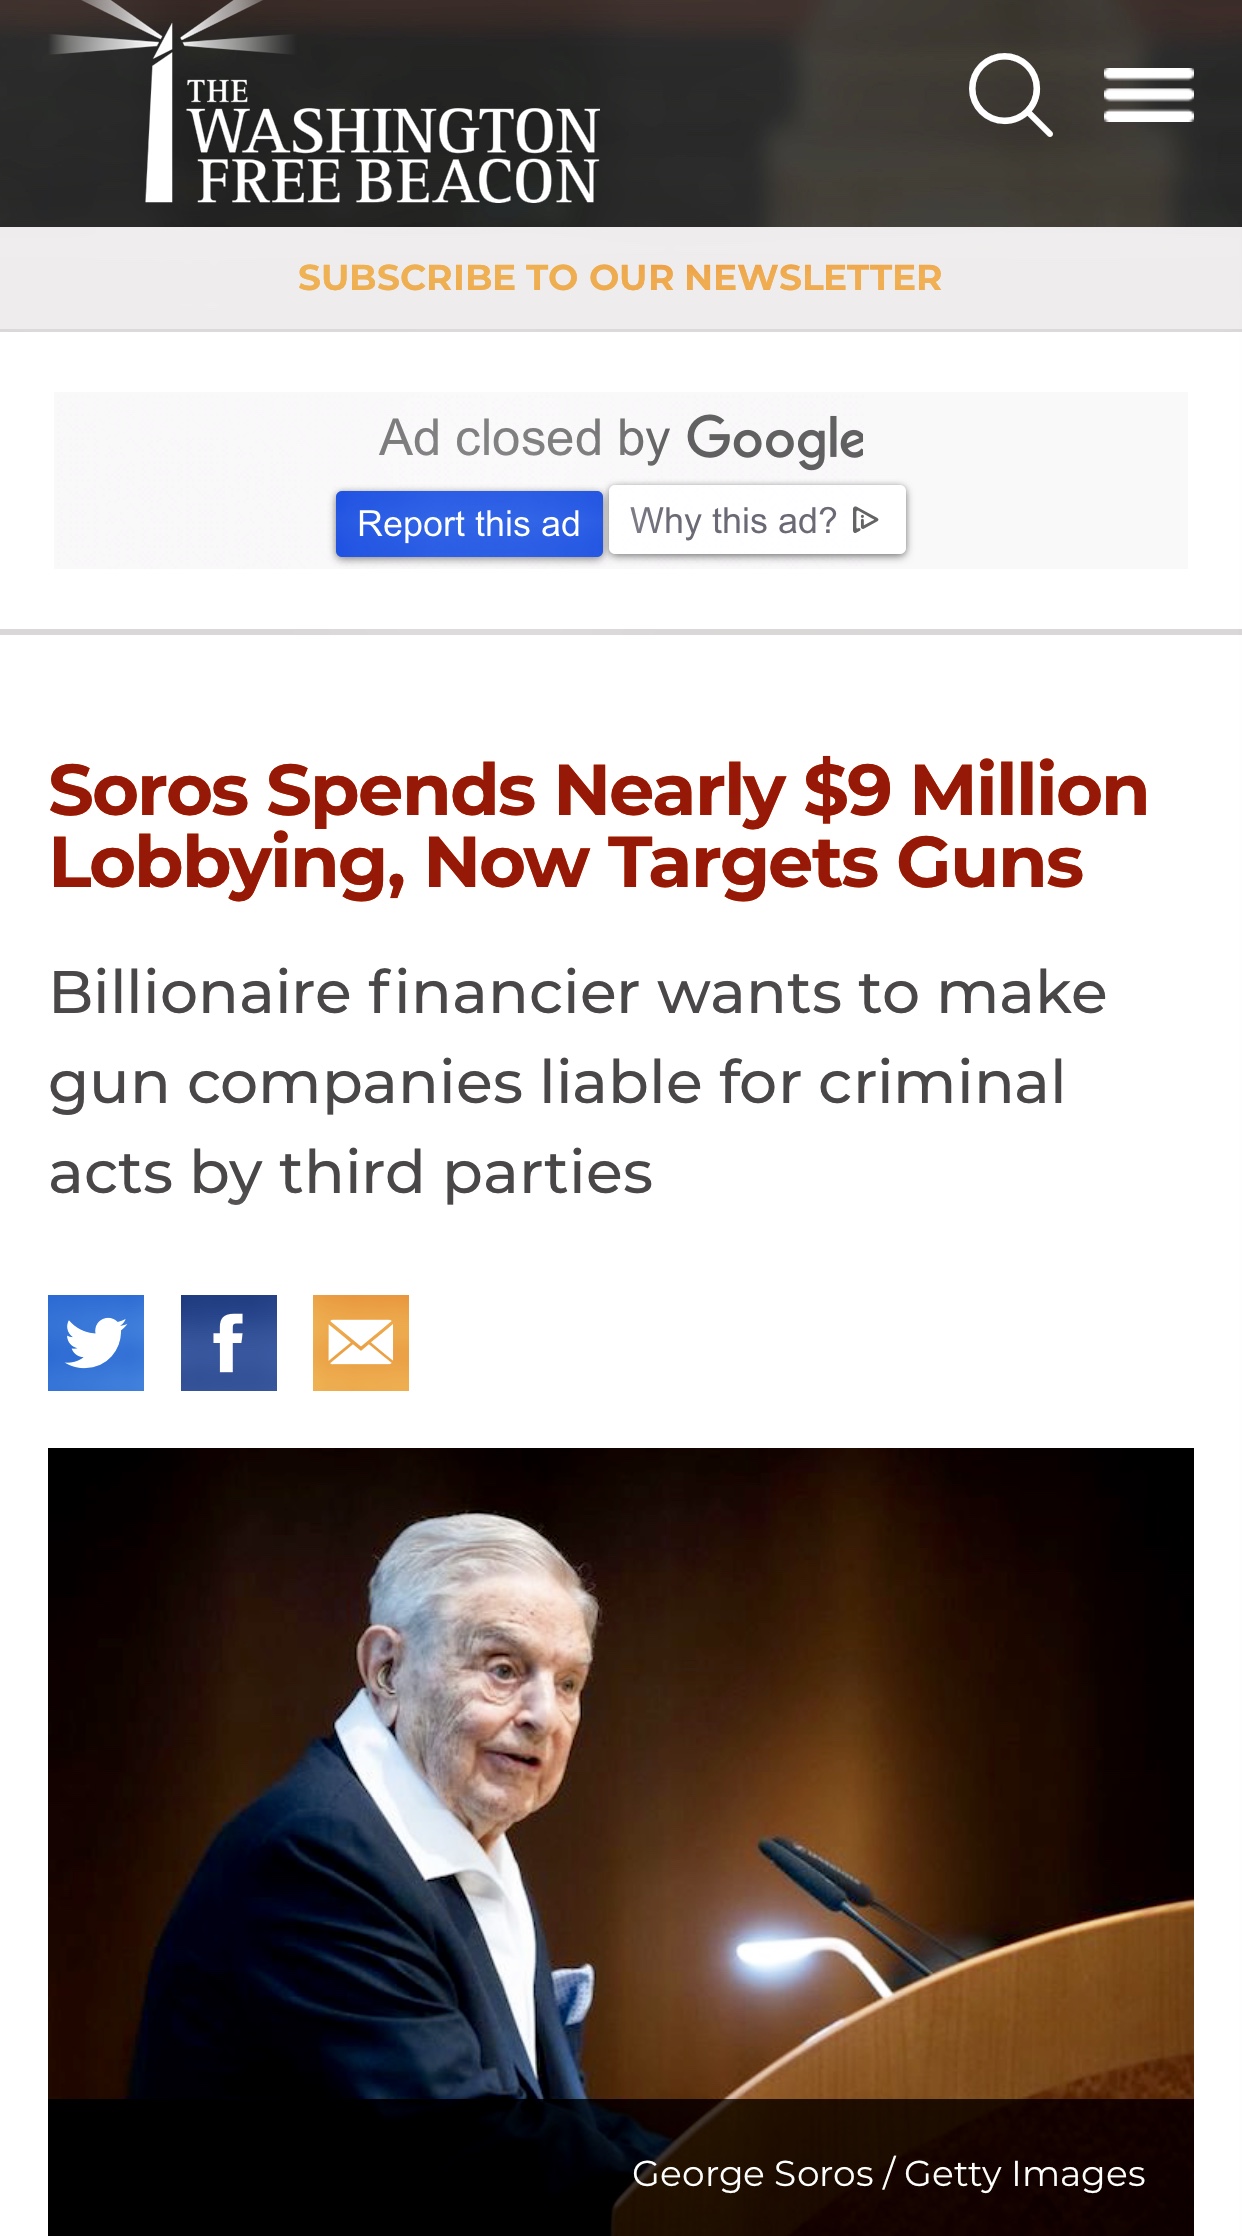 Soros Spends $9 Million Lobbying Targeting  Guns